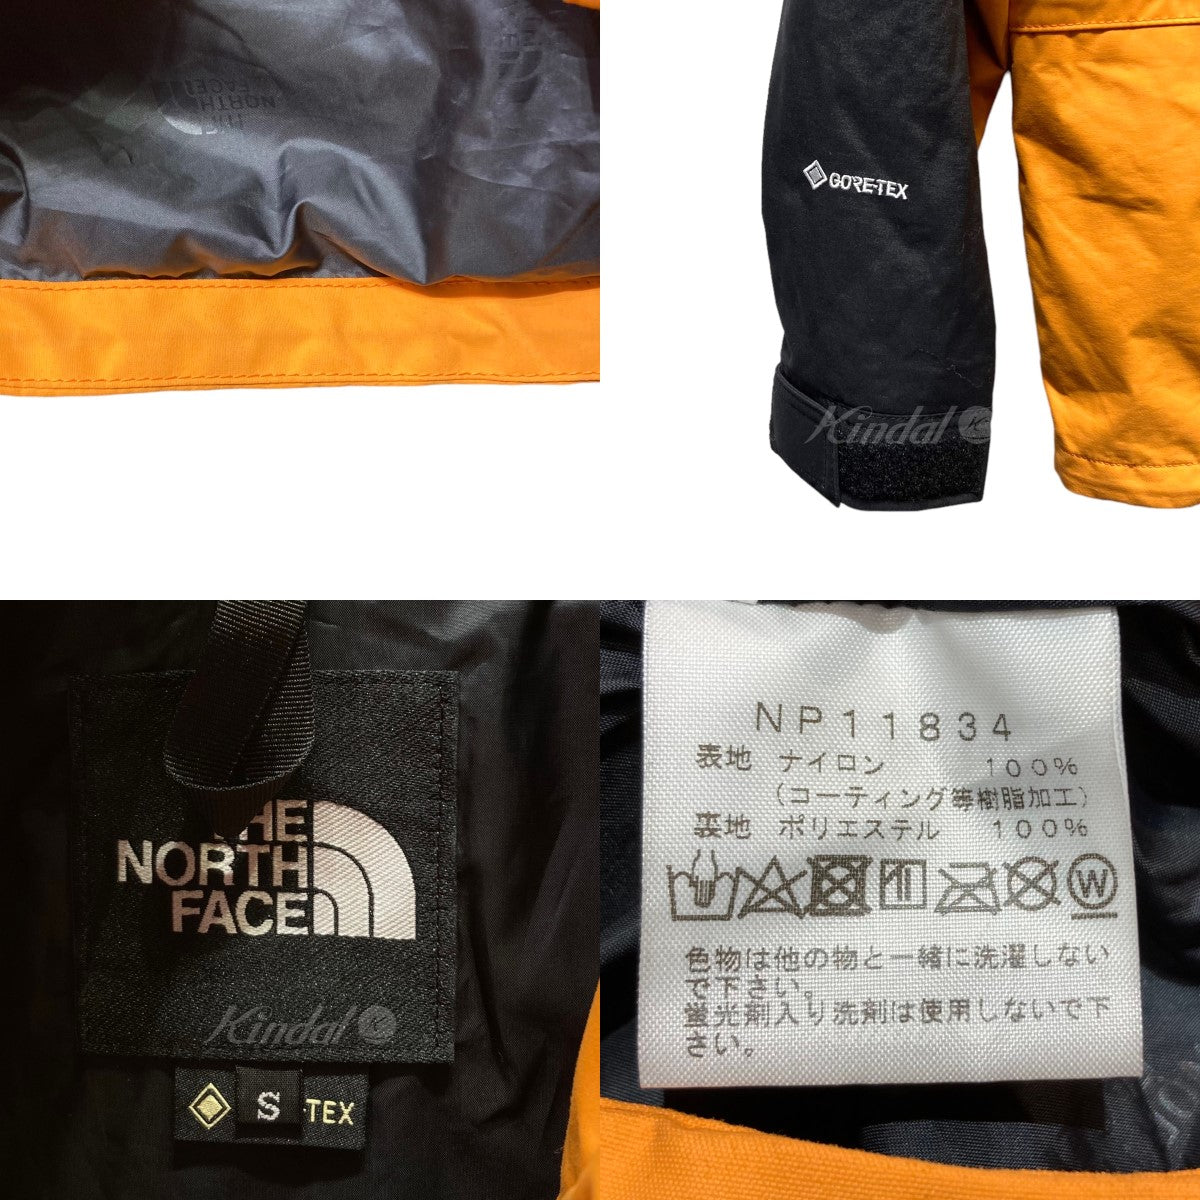 THE NORTH FACE(ザノースフェイス) Mountain Light Jacket マウンテンライトジャケット NP11834 NP11834  オレンジ×ブラック サイズ S｜【公式】カインドオルオンライン ブランド古着・中古通販【kindal】